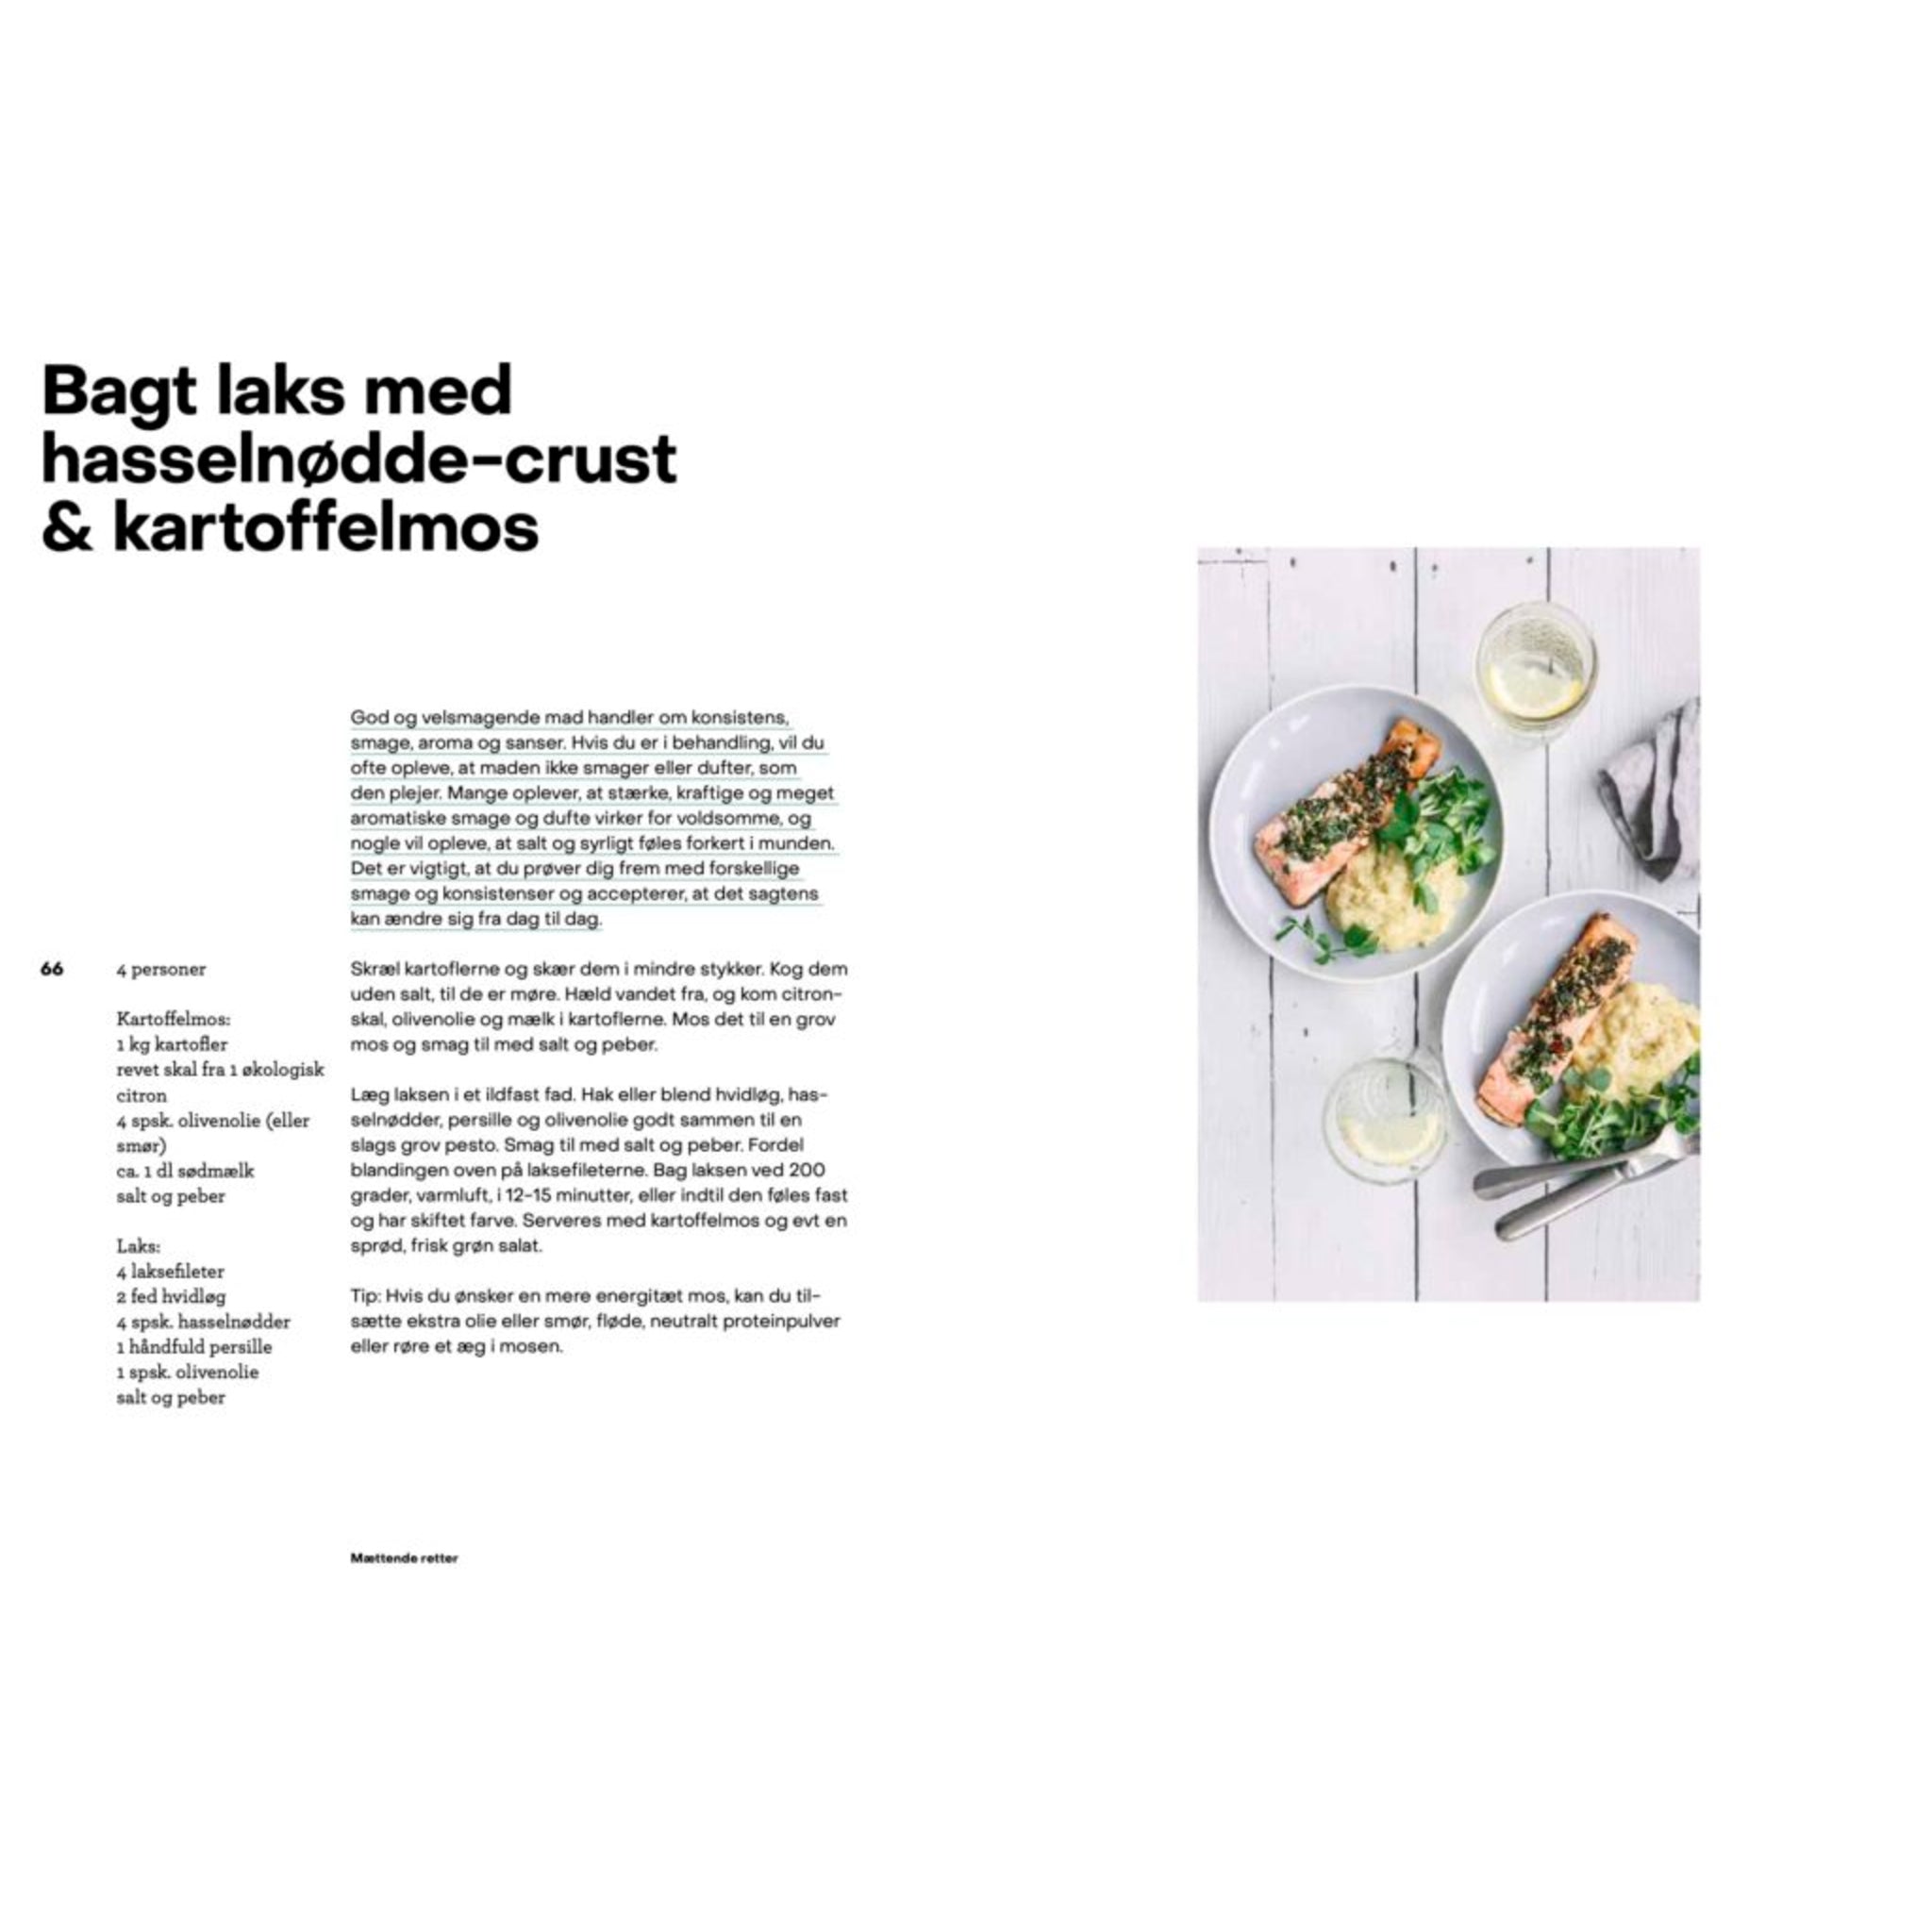 Opskrift bagt laks med hasselnødde-crust & kartoffelmos af Ditte Ingemann, Oliviers & Co